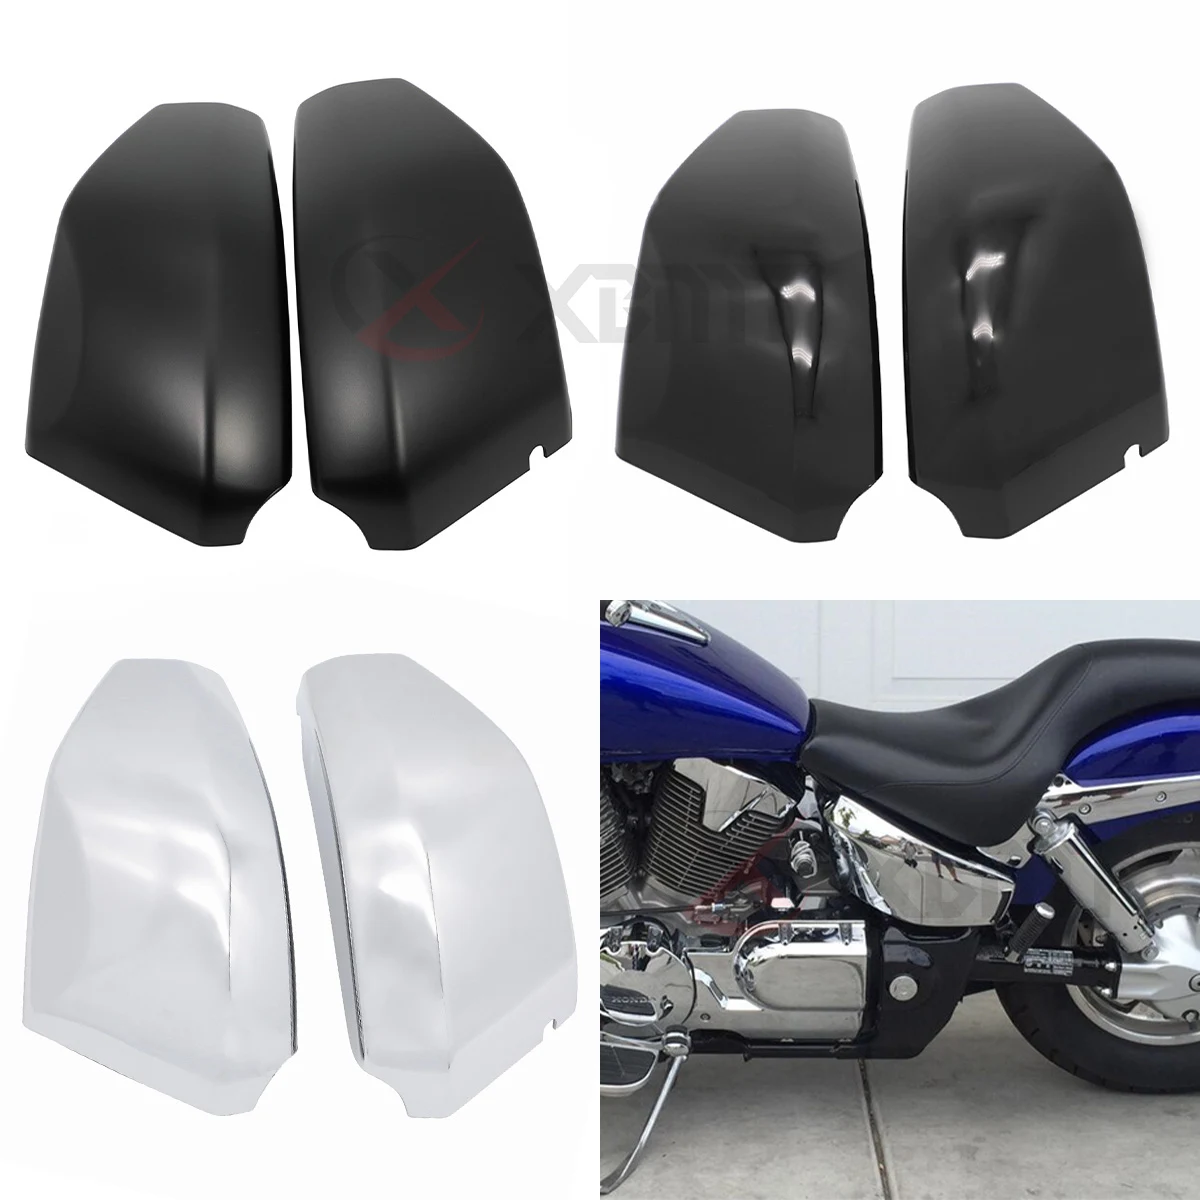 

Motorcycle ABS Plastic Side Fairing Battery Cover For Honda VTX 1300 VTX1300 VTX1300C VTX1300R VTX1300S VTX1300T 2003-2009